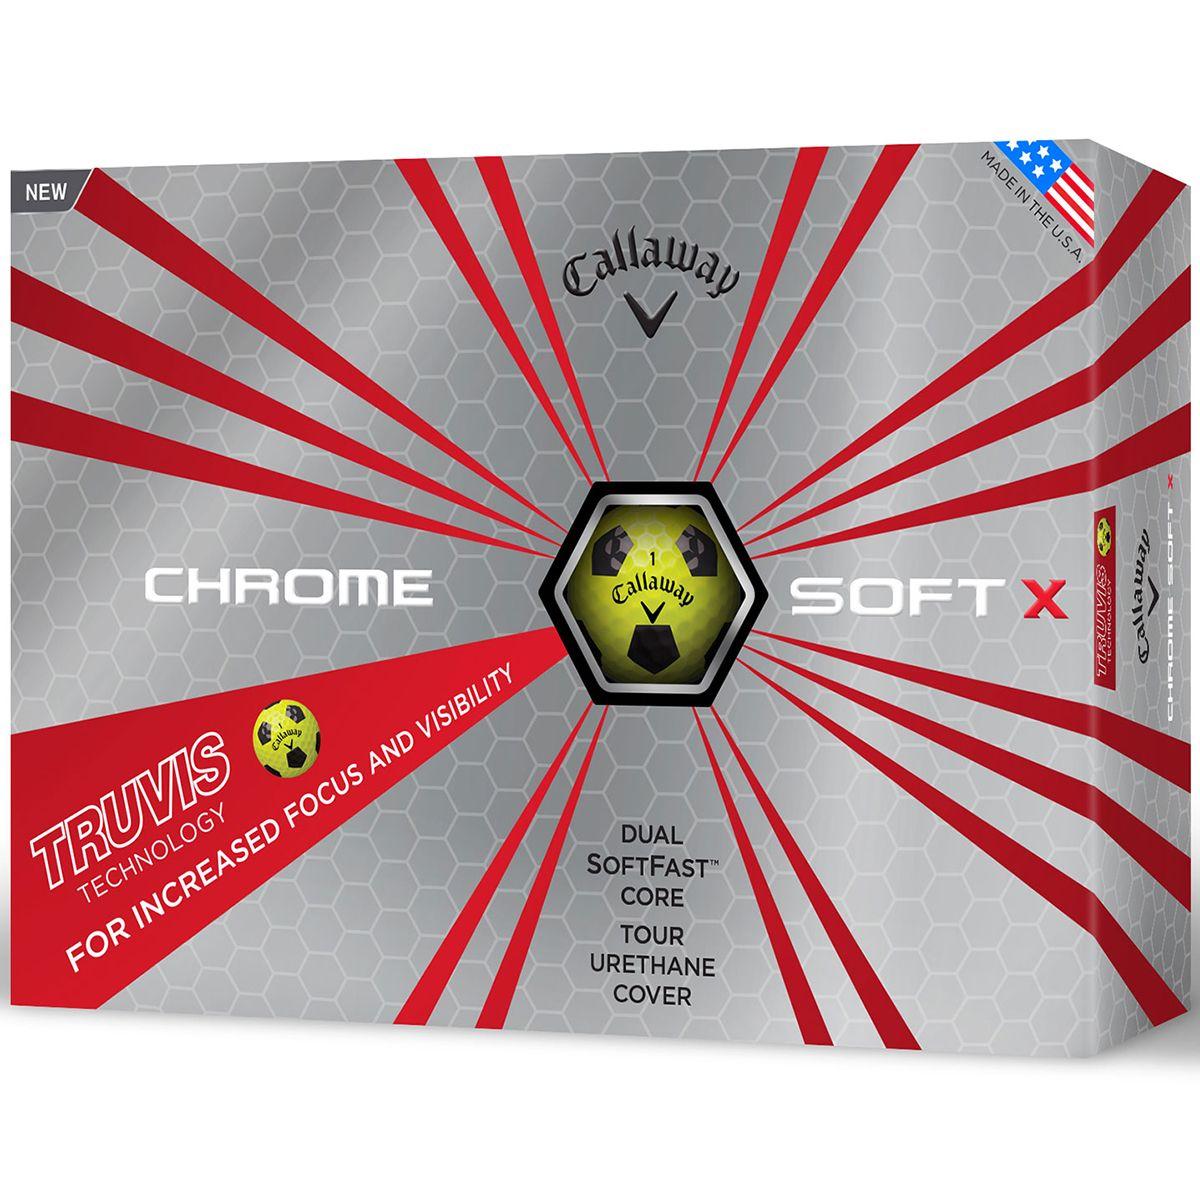 Red Ball with X Logo - Callaway Golf 2017 Chrome Soft X Truvis 12 Golf Balls | Online Golf